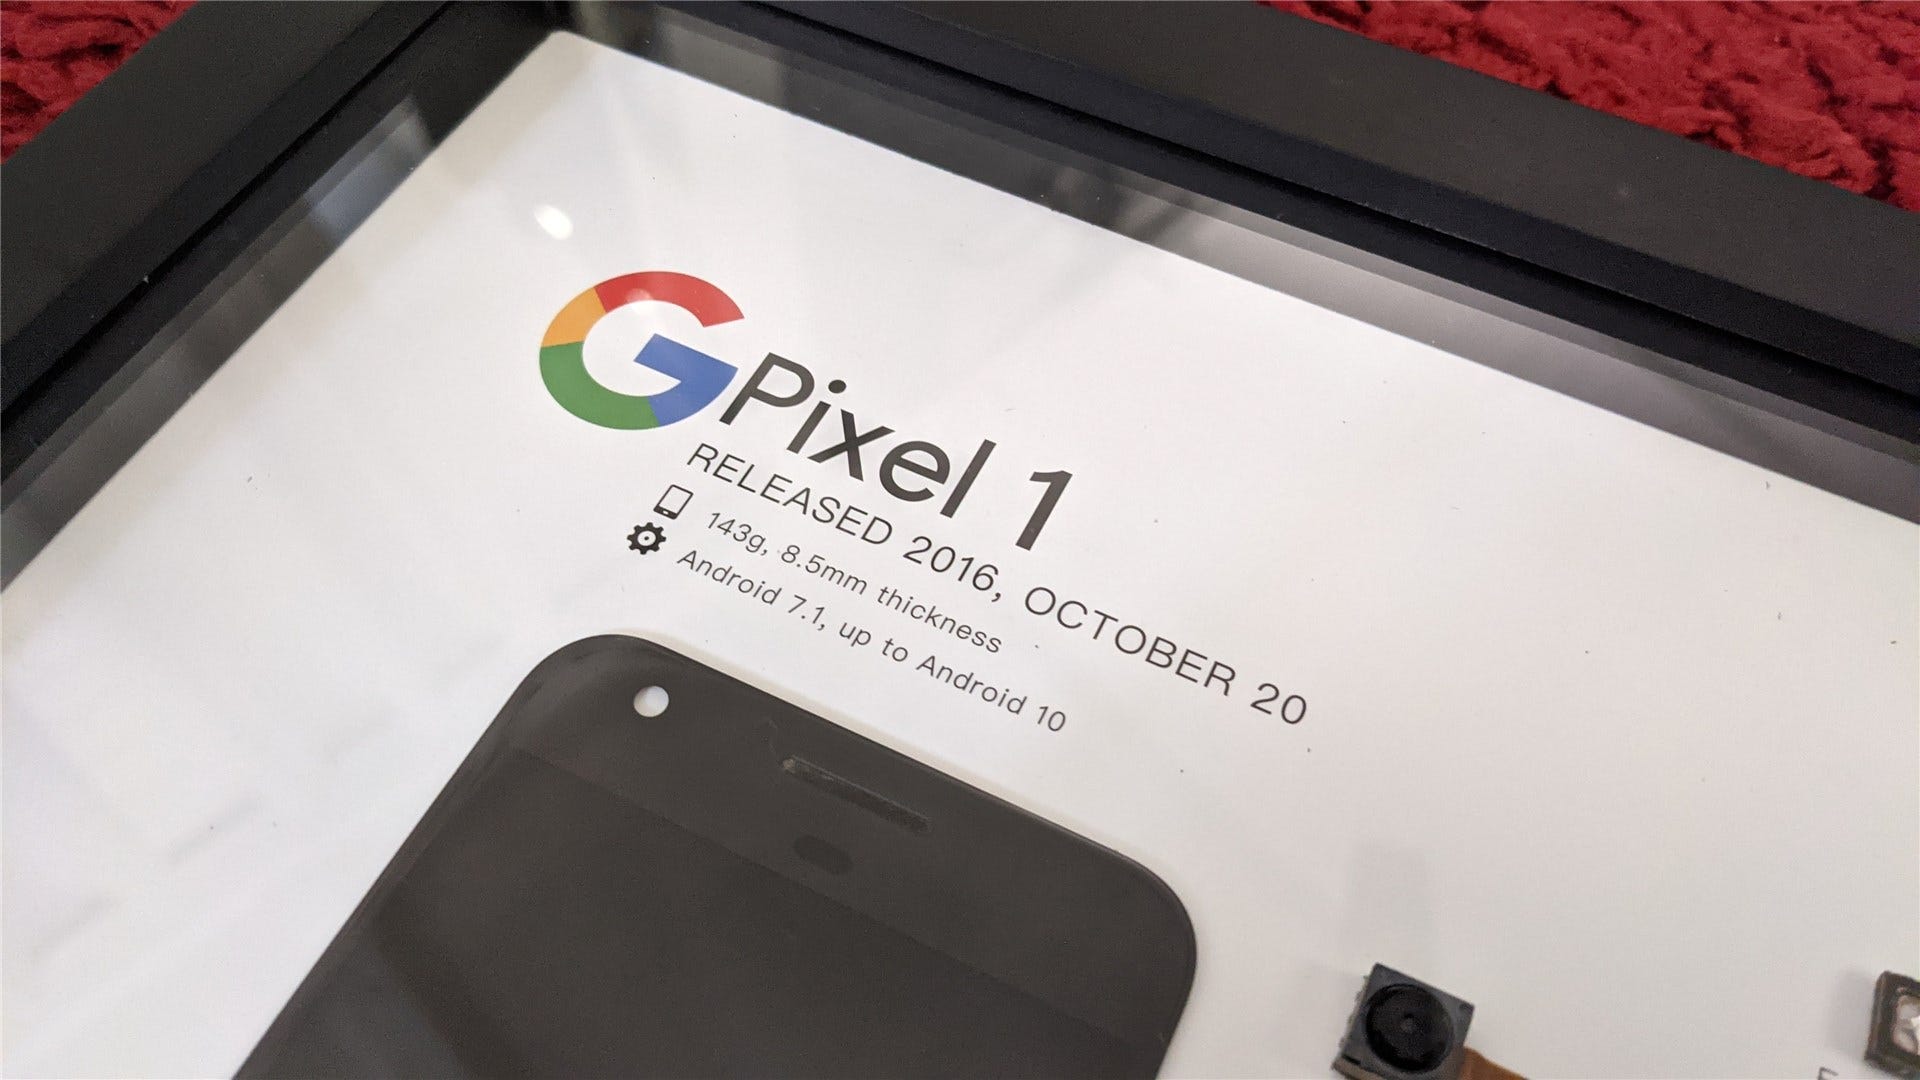 Cận cảnh thông tin chi tiết về Pixel 1, bao gồm ngày phát hành và các phiên bản Android